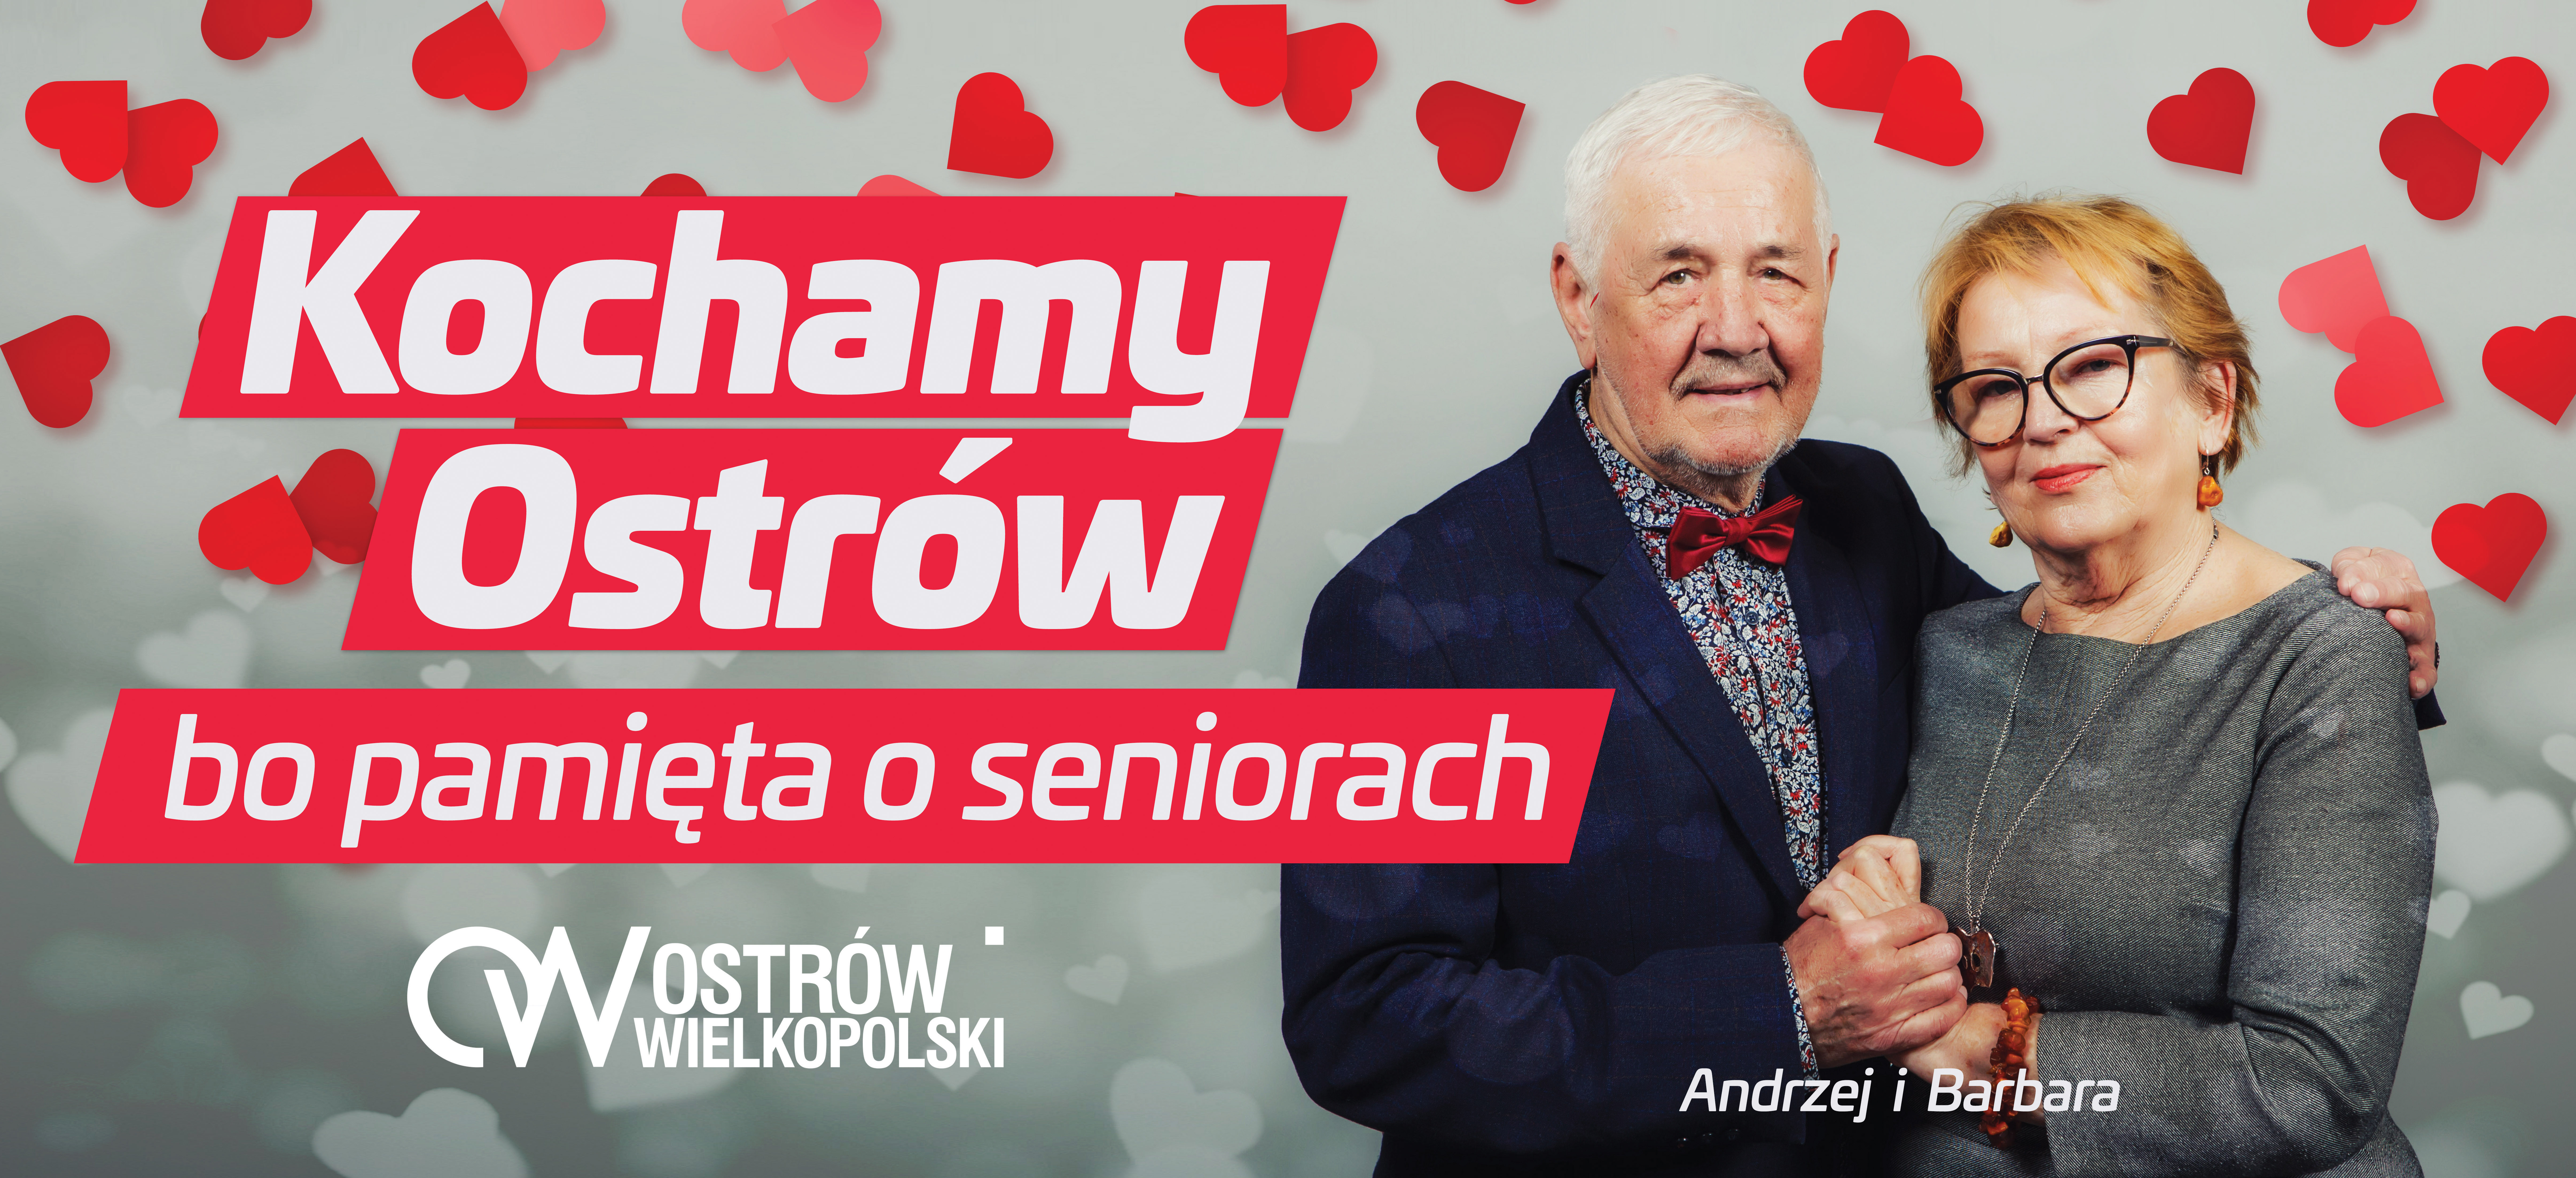 Andrzej i Barbara kochają Ostrów, bo pamięta o seniorach